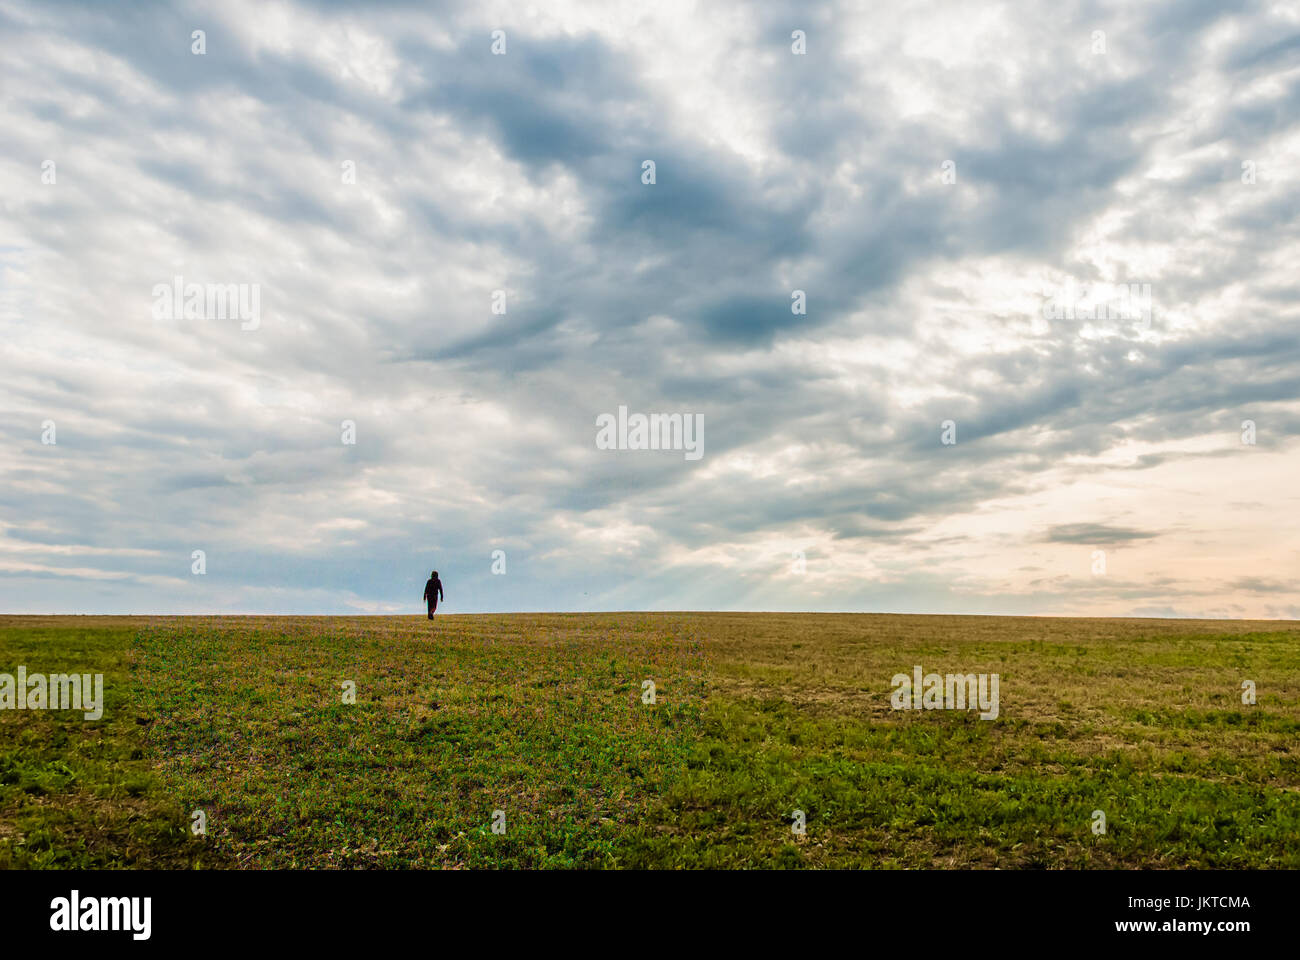 Ein einsamer Mann zu Fuß auf den Horizont der Landschaft unter einem dramatischen aussehenden Himmel. Gefühl von Einsamkeit und Angst. HDR, erschossen. Stockfoto